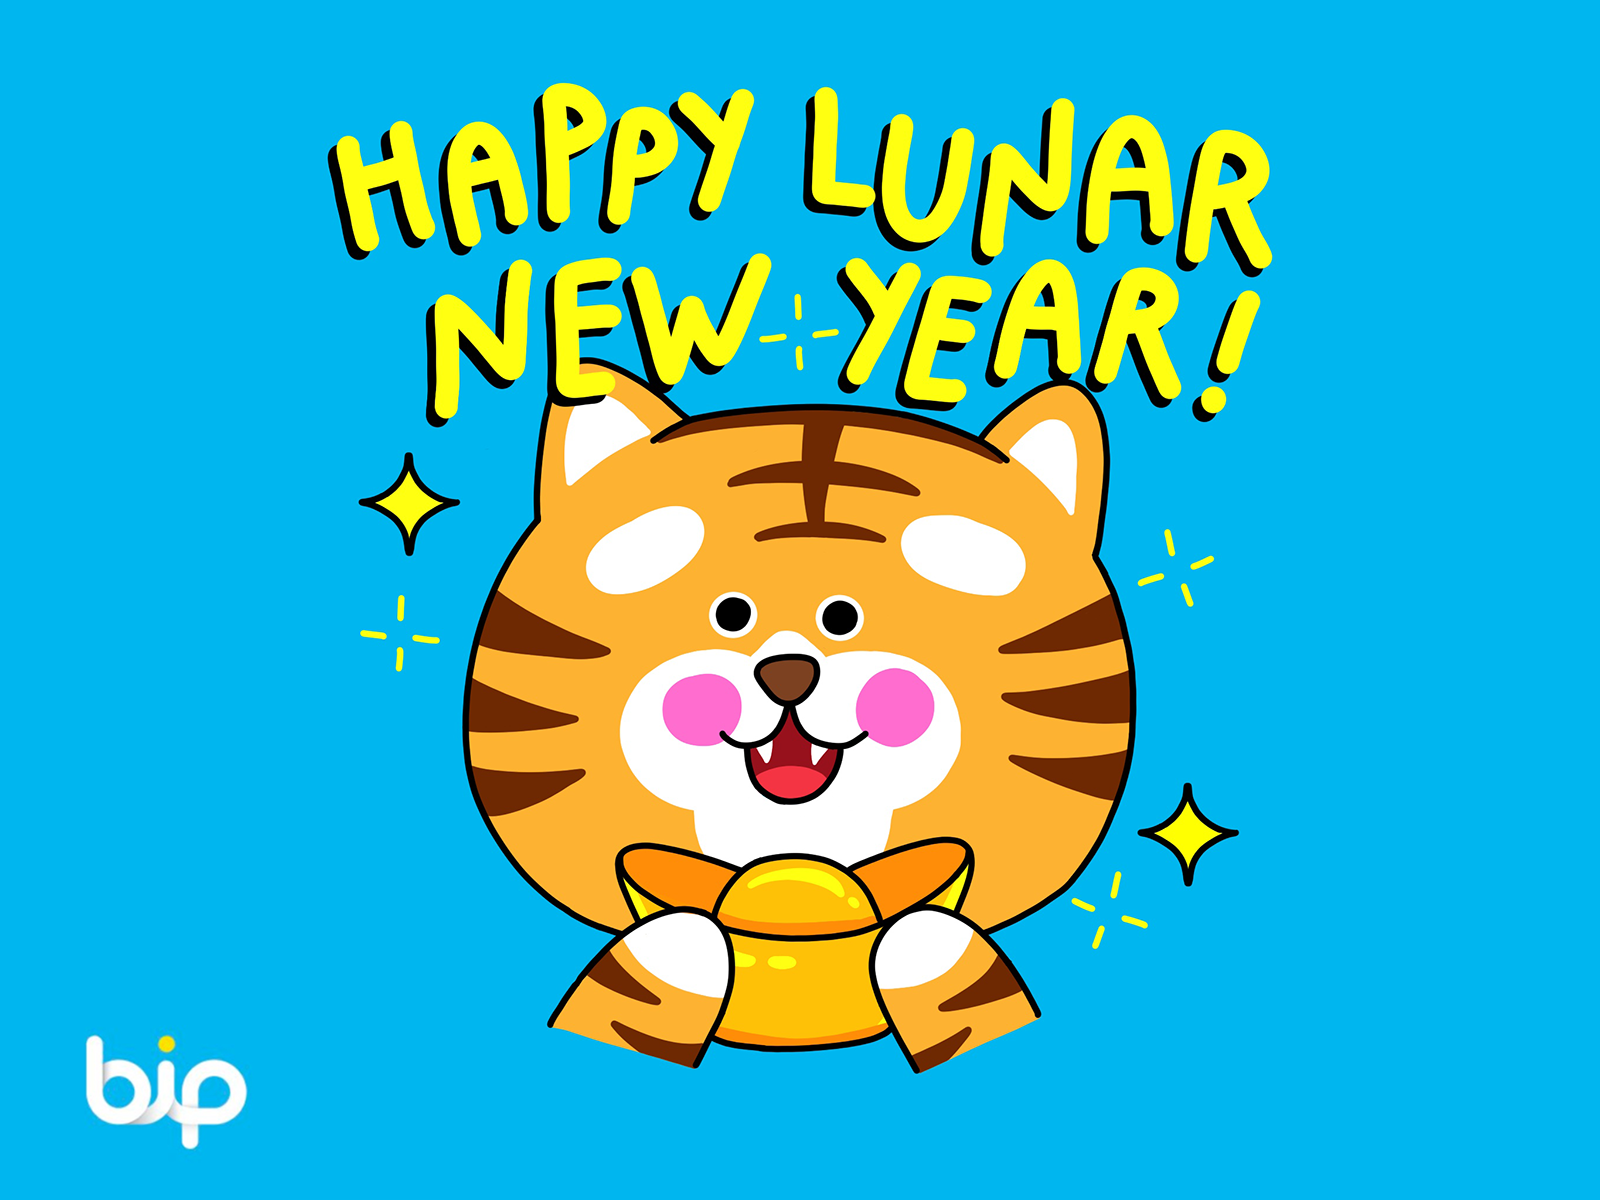 Lunar New Year Tiger sticker by Idil Keysan on Dribbble